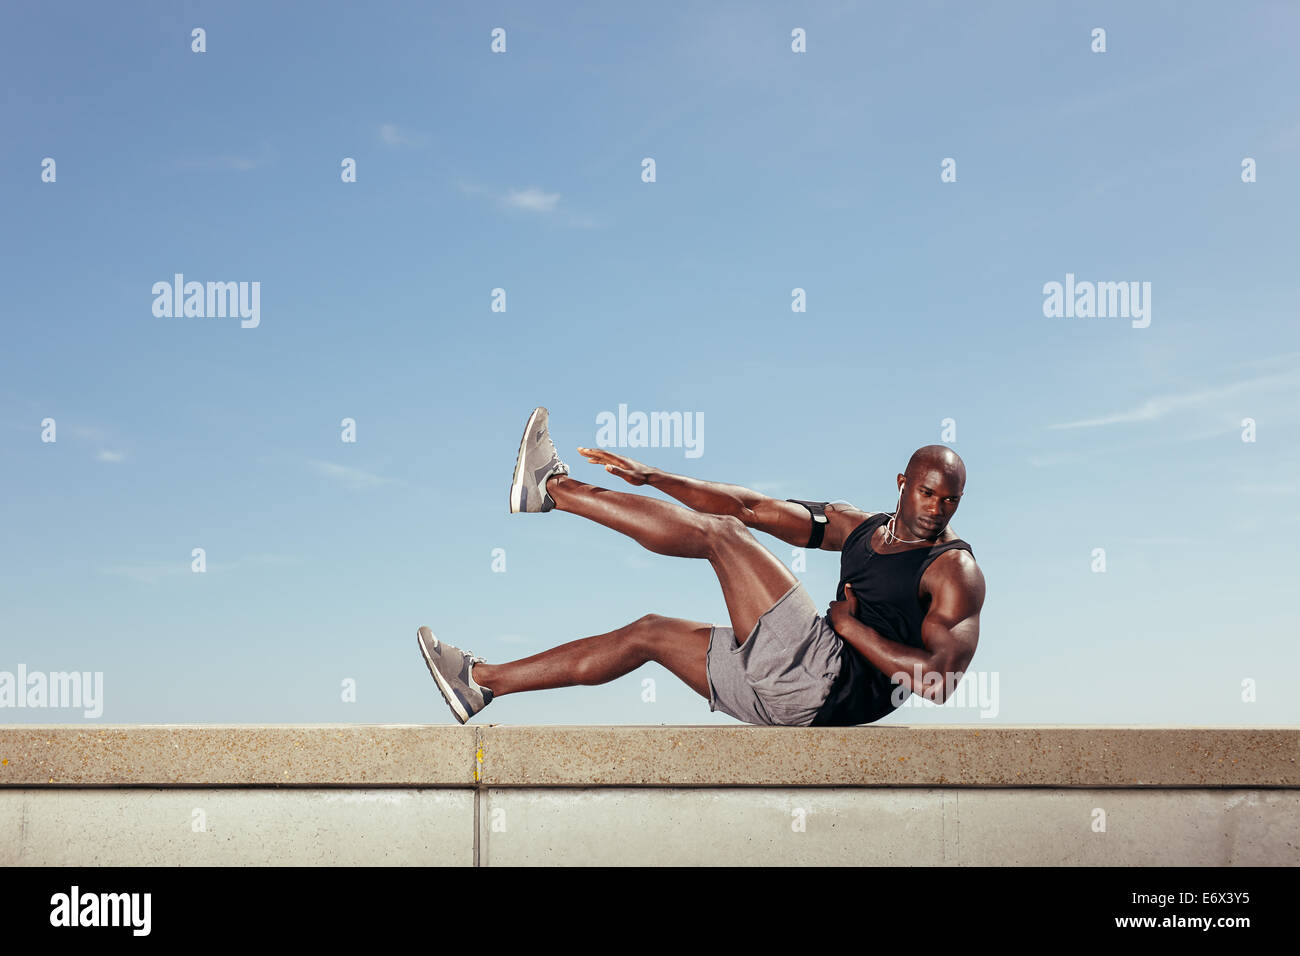 Passen Sie jungen Mann stretching Training im Freien zu tun. Muskulösen jungen Fitness-Modell Ausübung gegen Himmel. Stockfoto